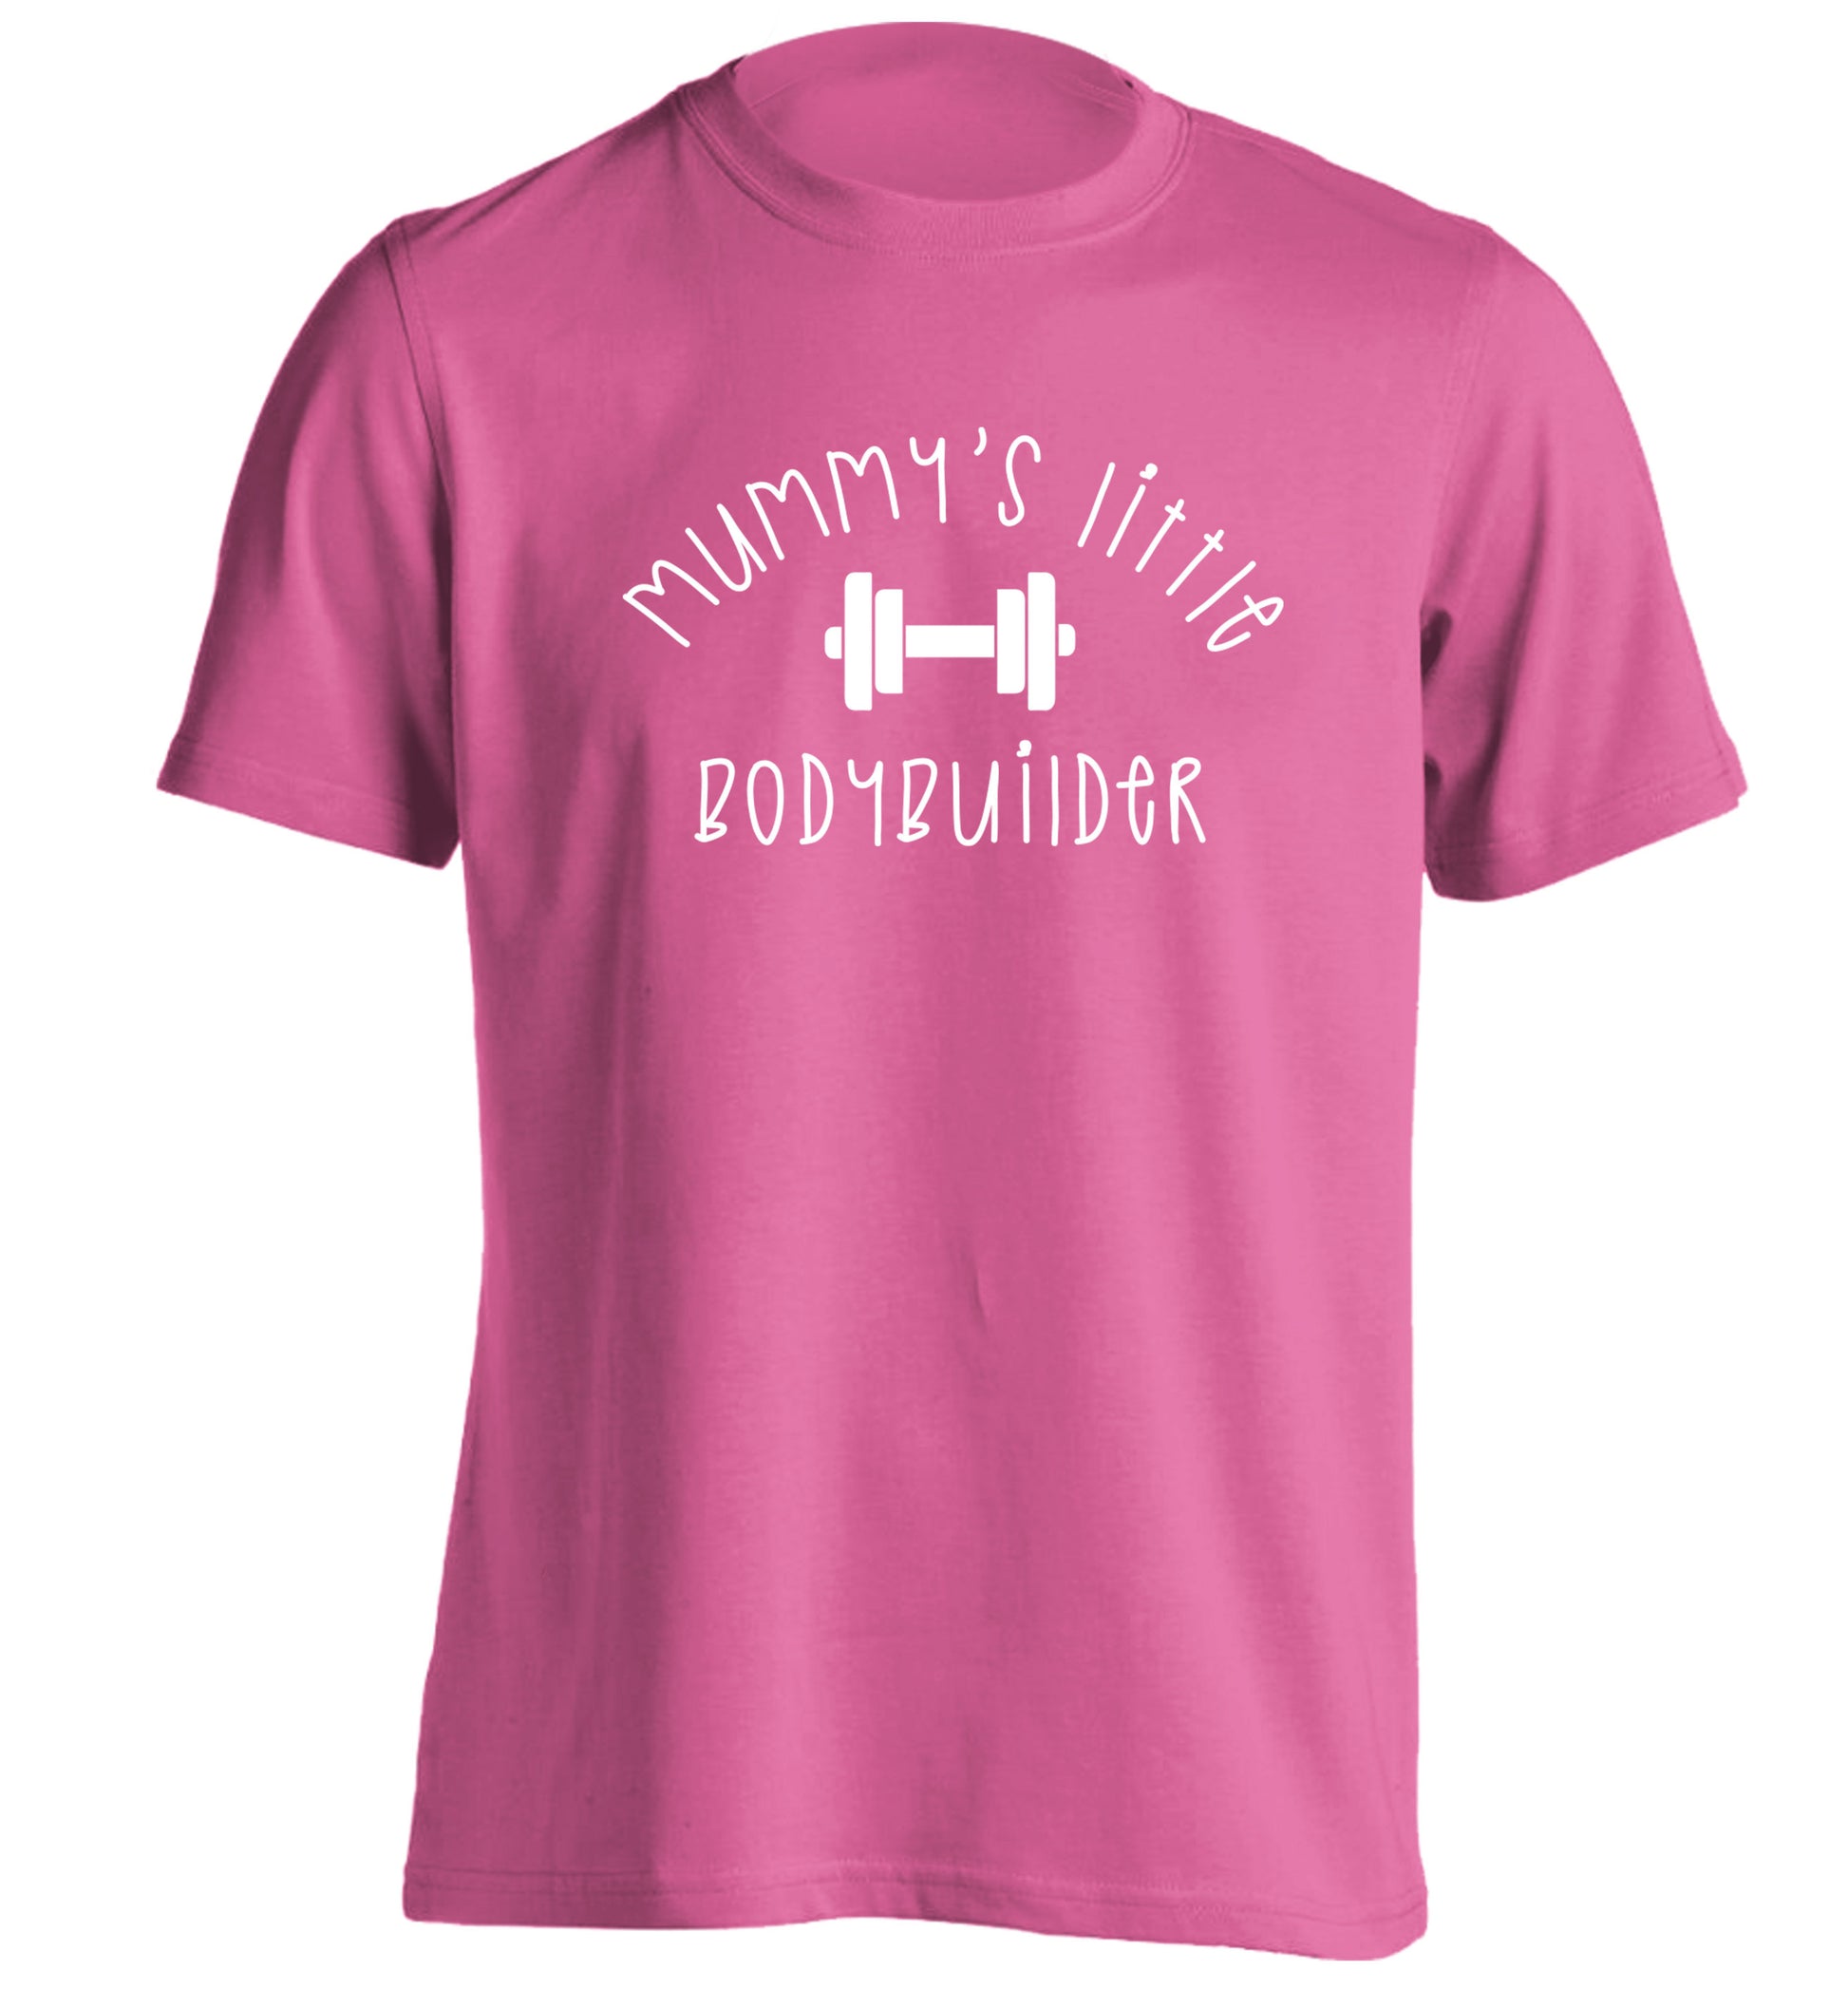 Mummy's little bodybuilder adults unisex pink Tshirt 2XL